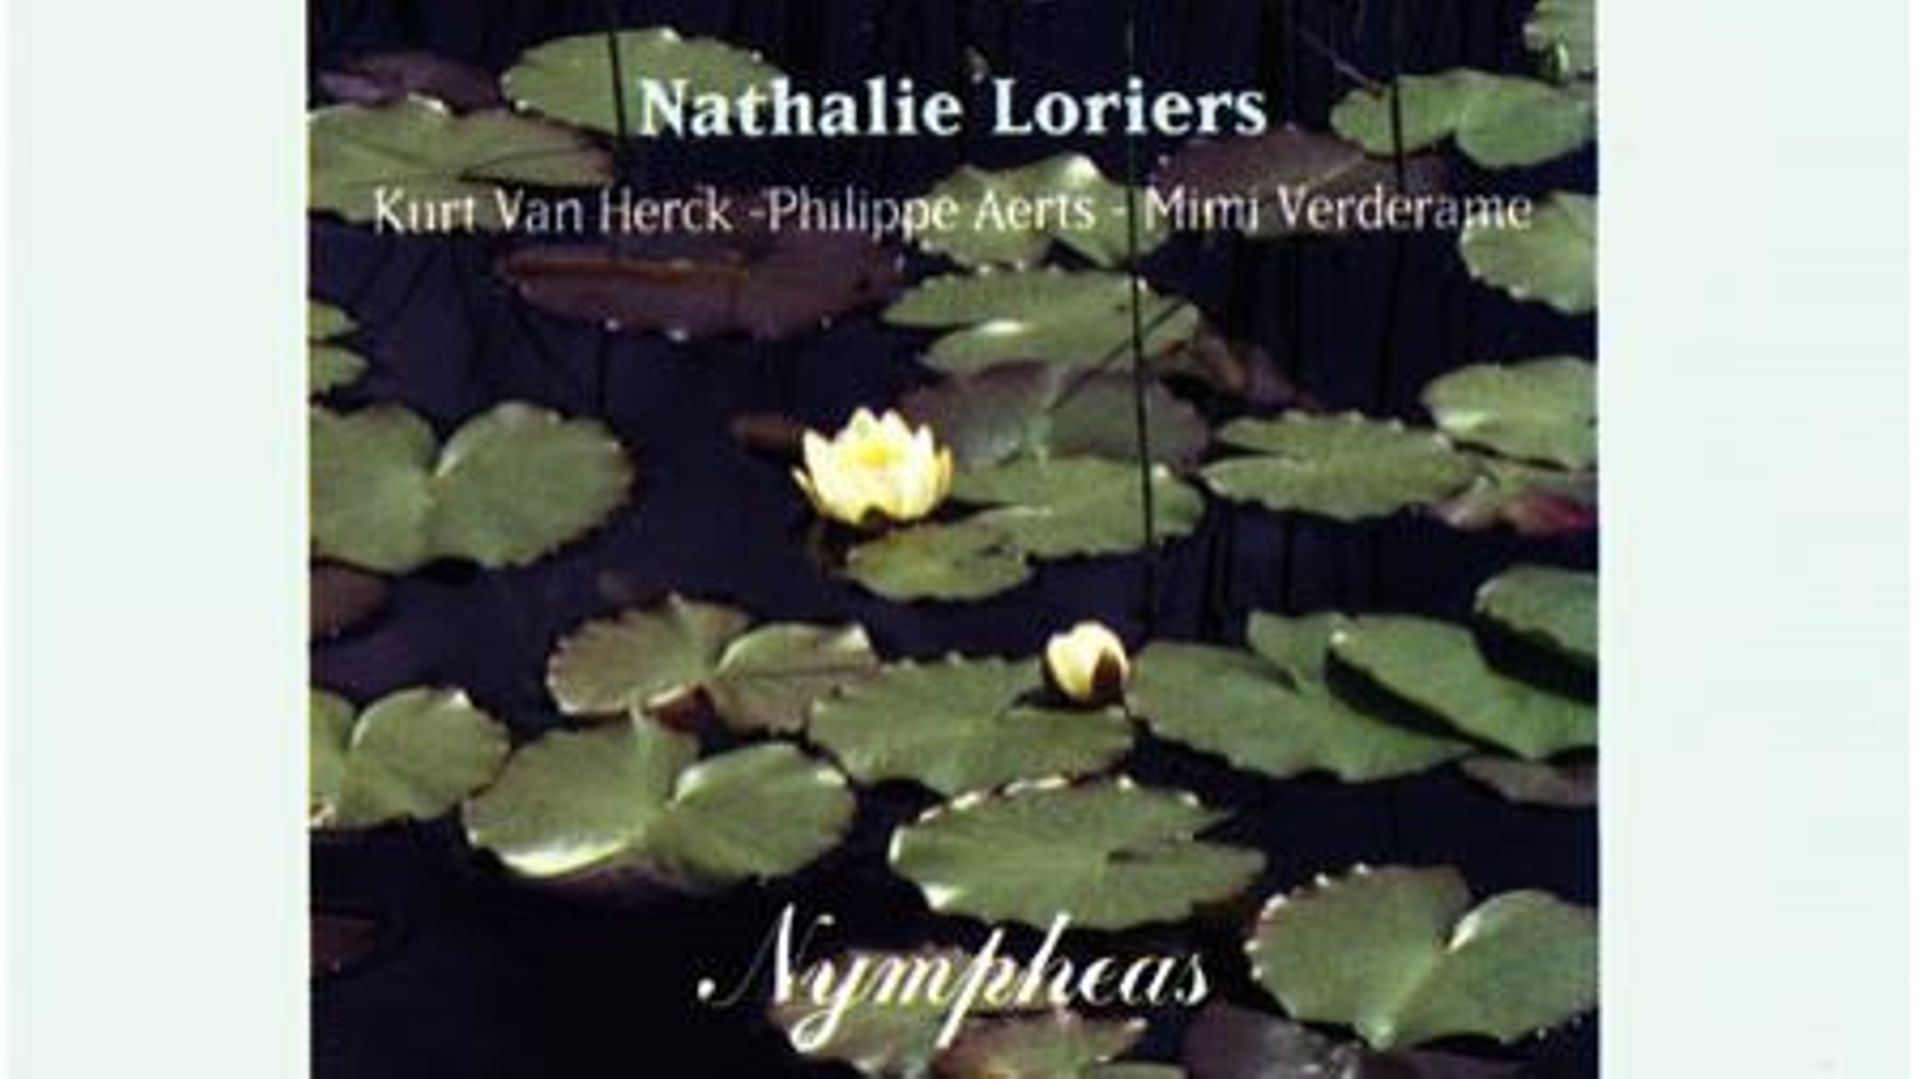 Il y a 30 ans s'enregistrait l'album "Nympheas" de la pianiste Nathalie Loriers